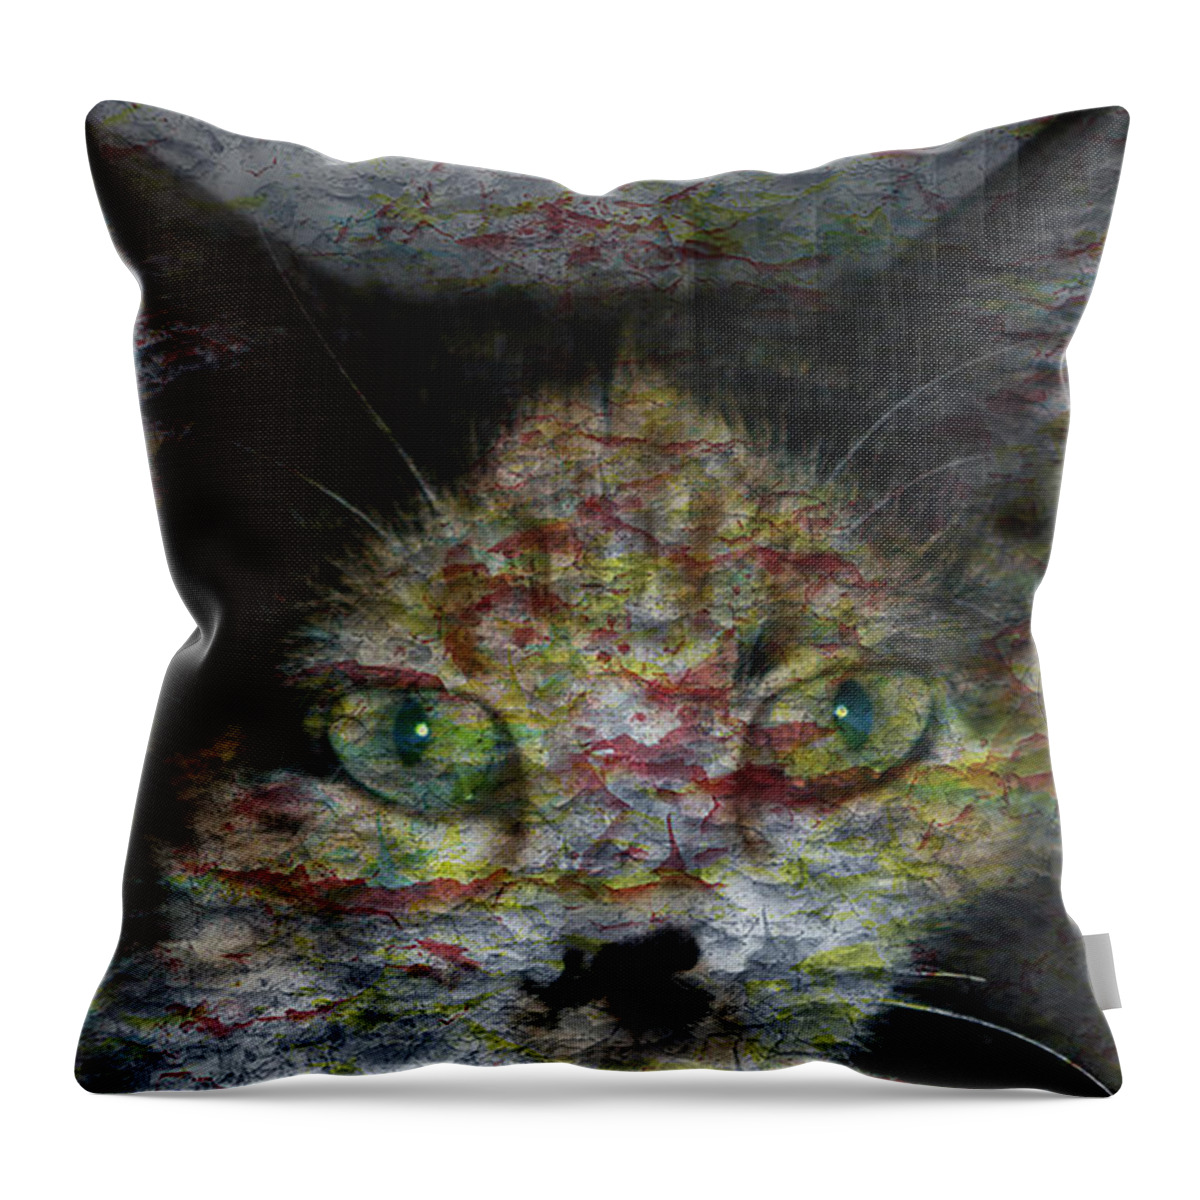 Cat Throw Pillow featuring the photograph Catalina #1 by David Yocum